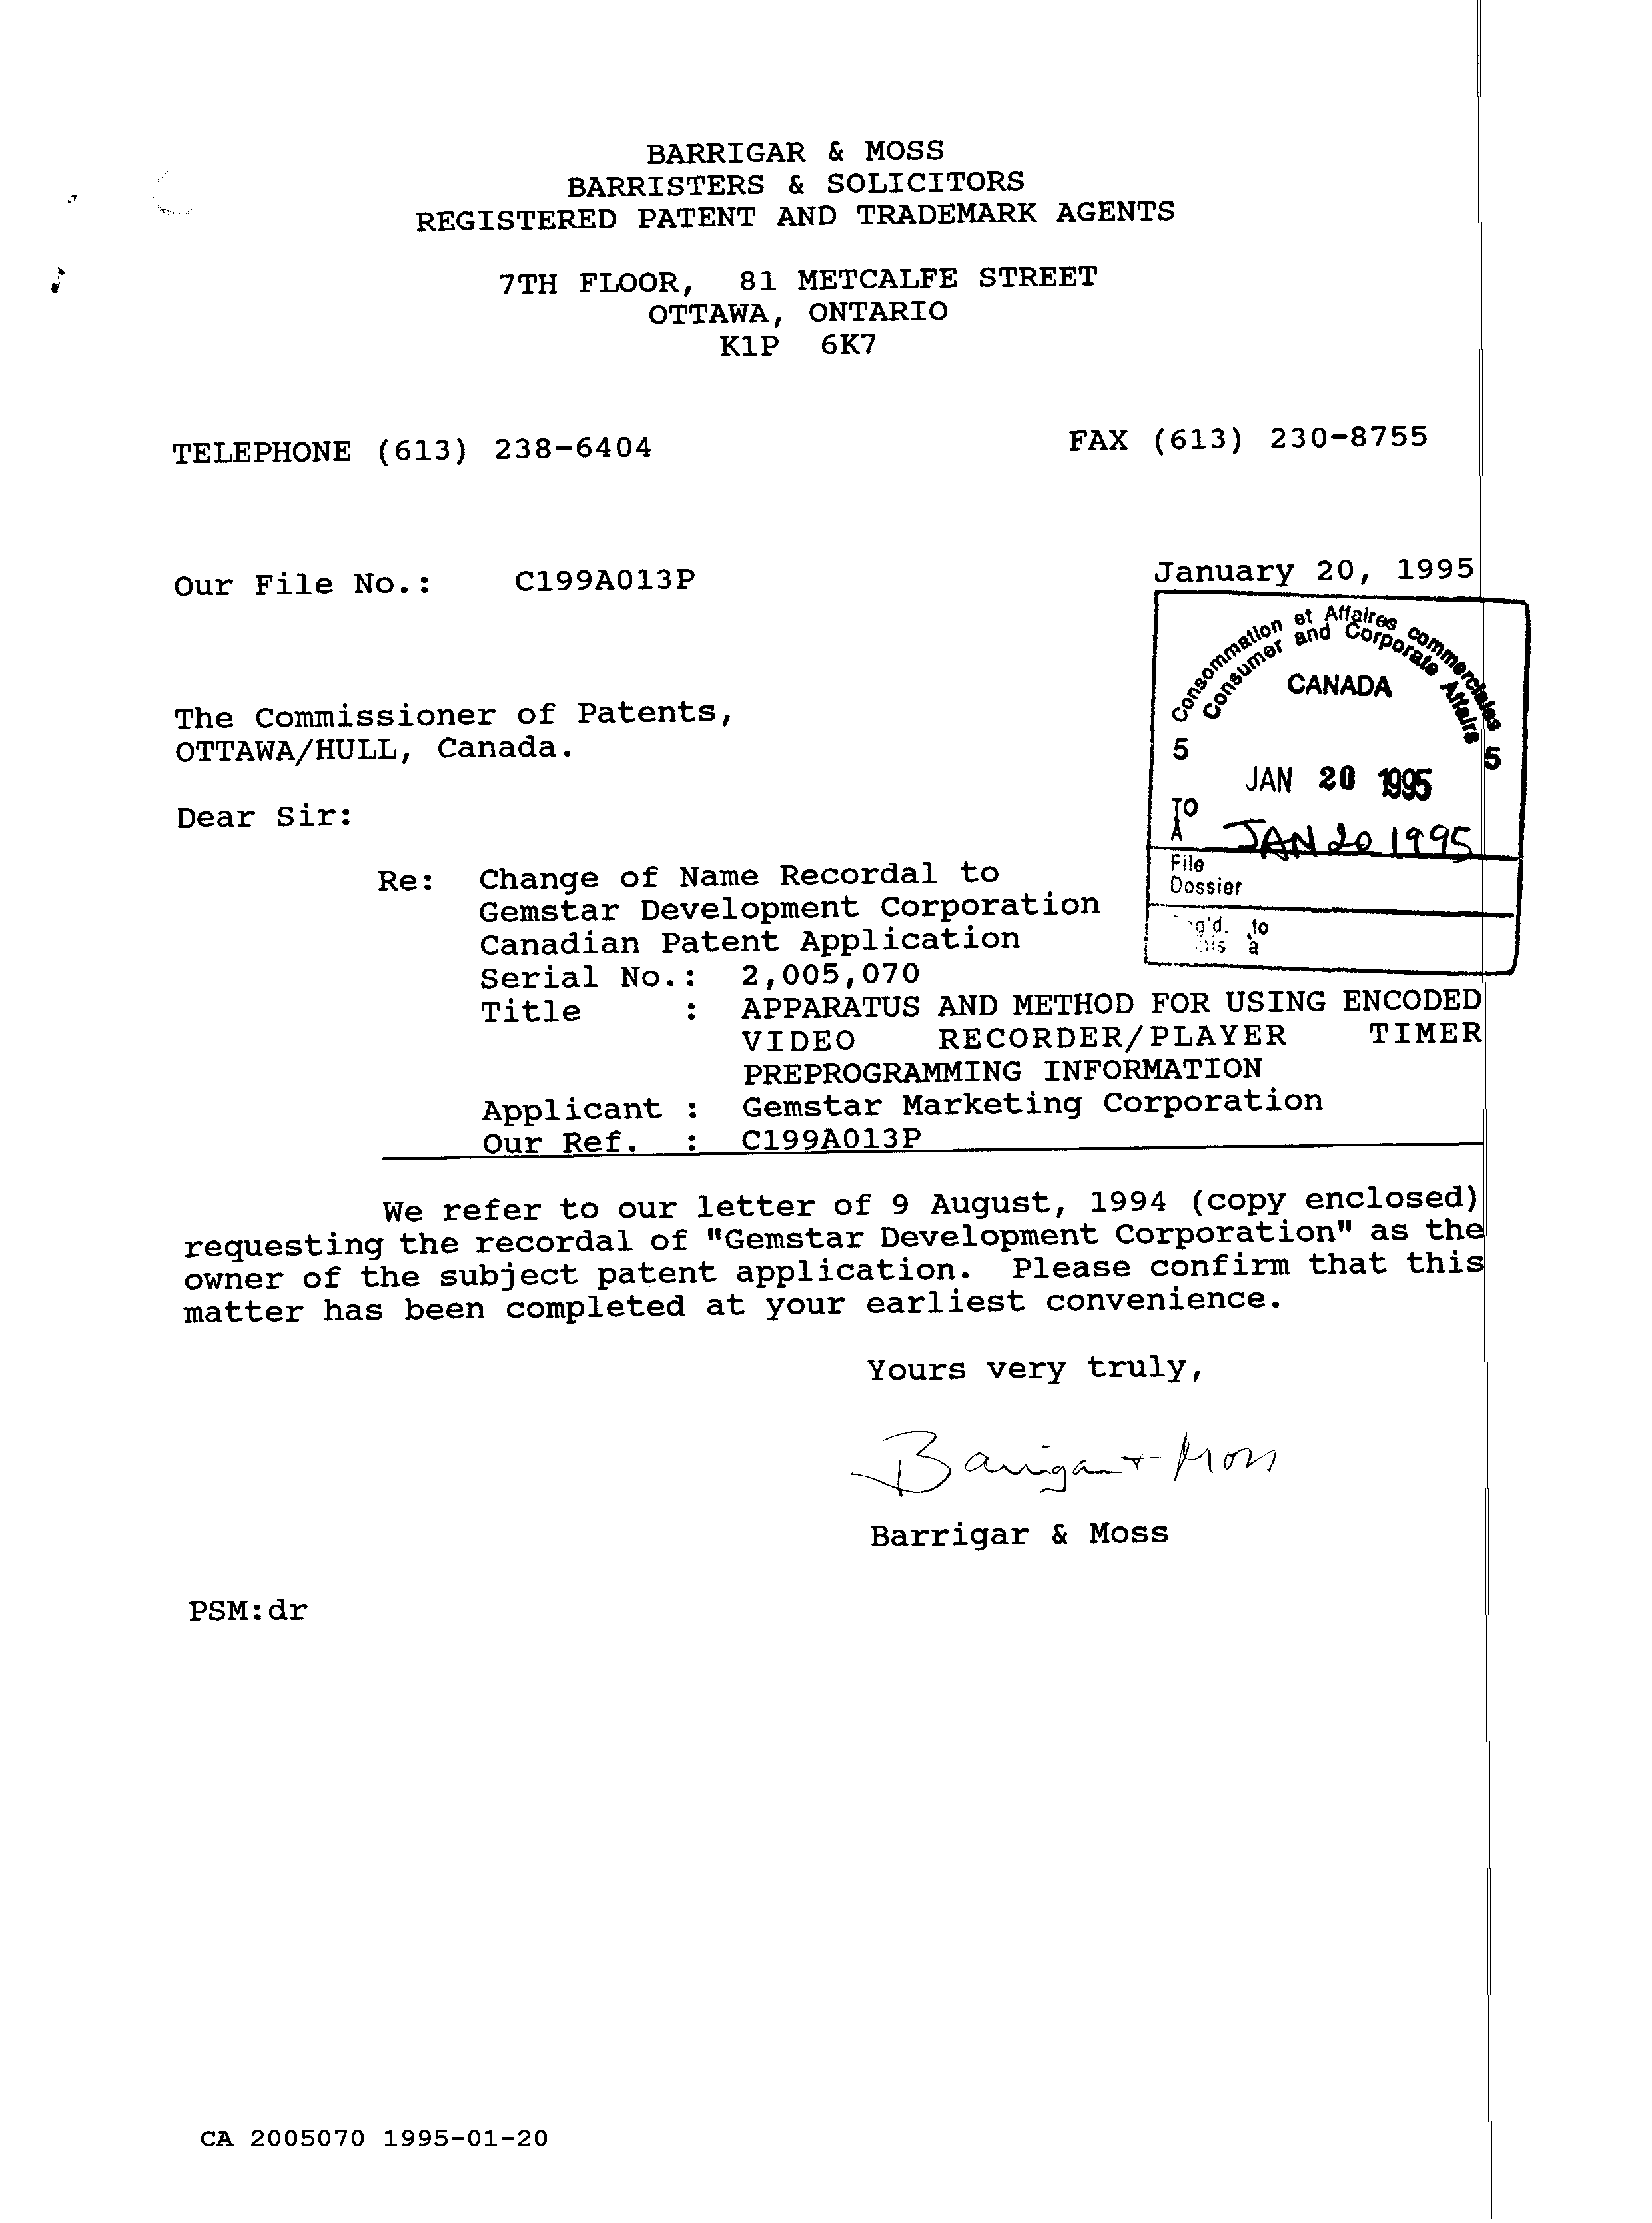 Document de brevet canadien 2005070. Correspondance reliée au PCT 19950120. Image 1 de 3